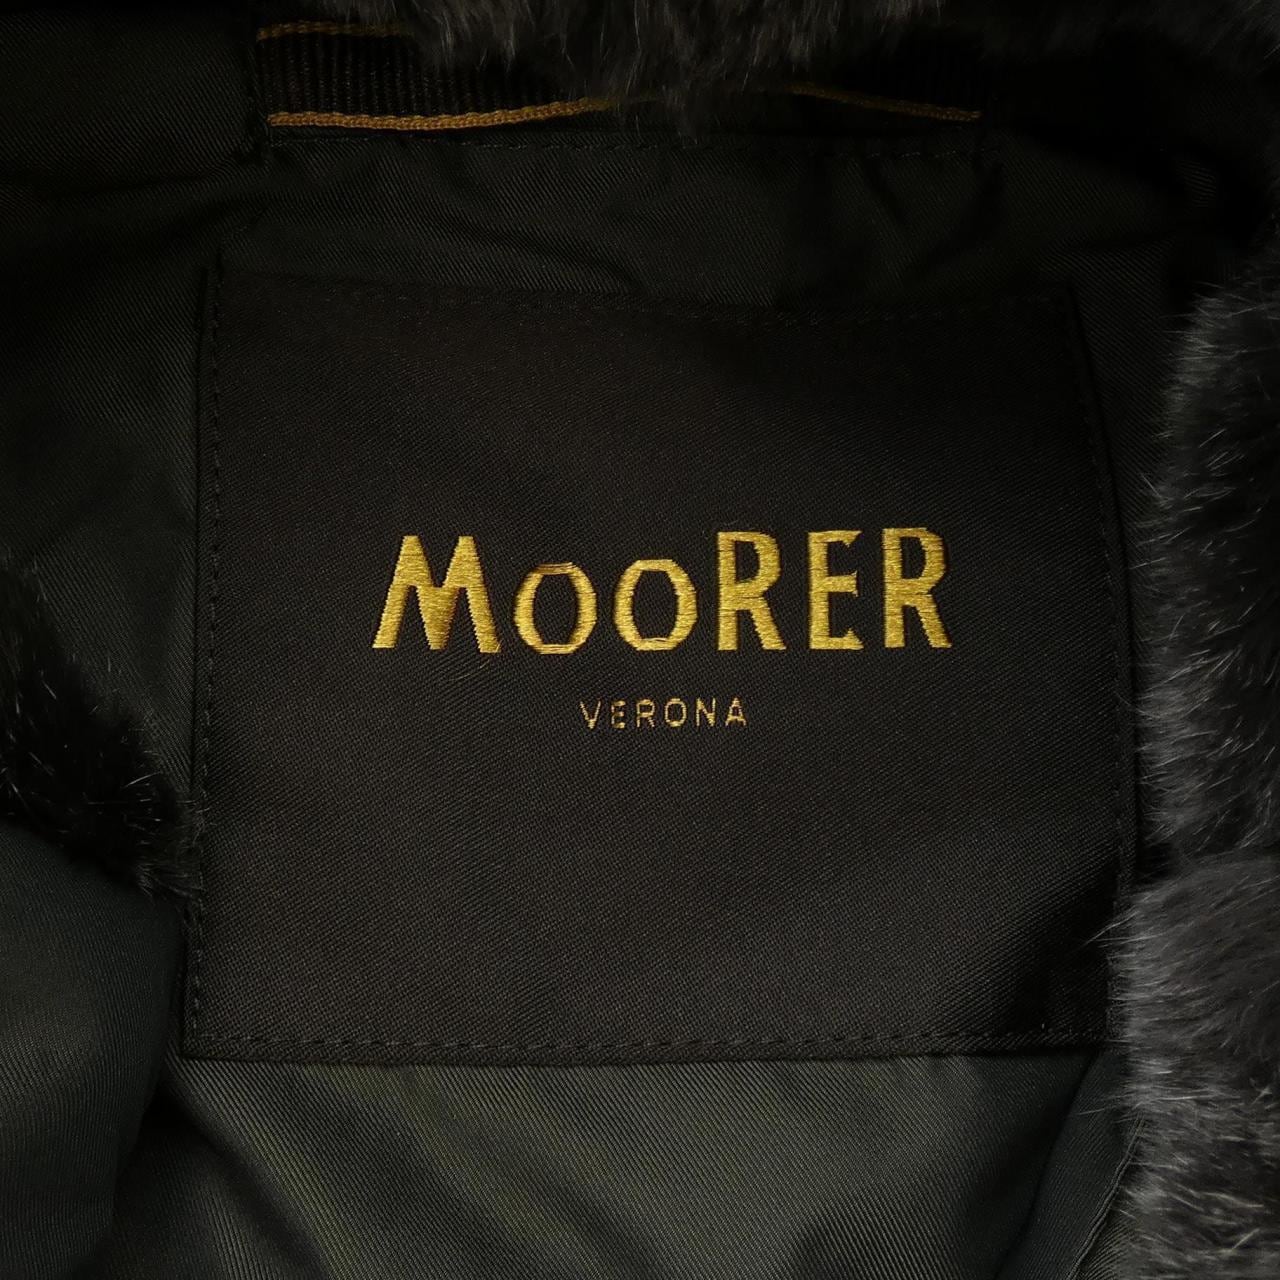 Mouret MOORER down coat